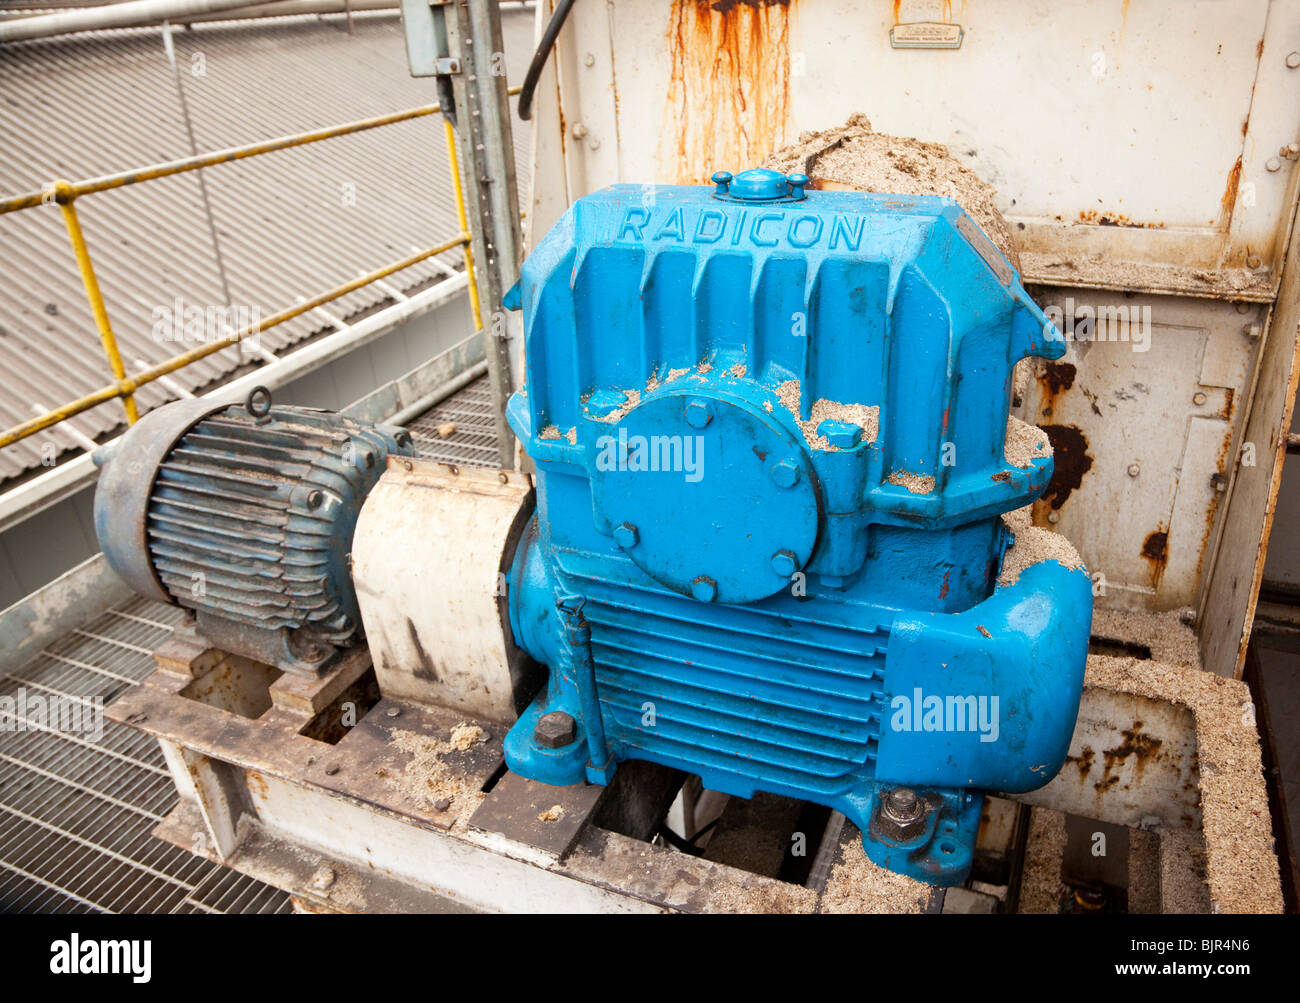 Caja de engranajes del motor eléctrico en la maquinaria de una fábrica en el REINO UNIDO Foto de stock